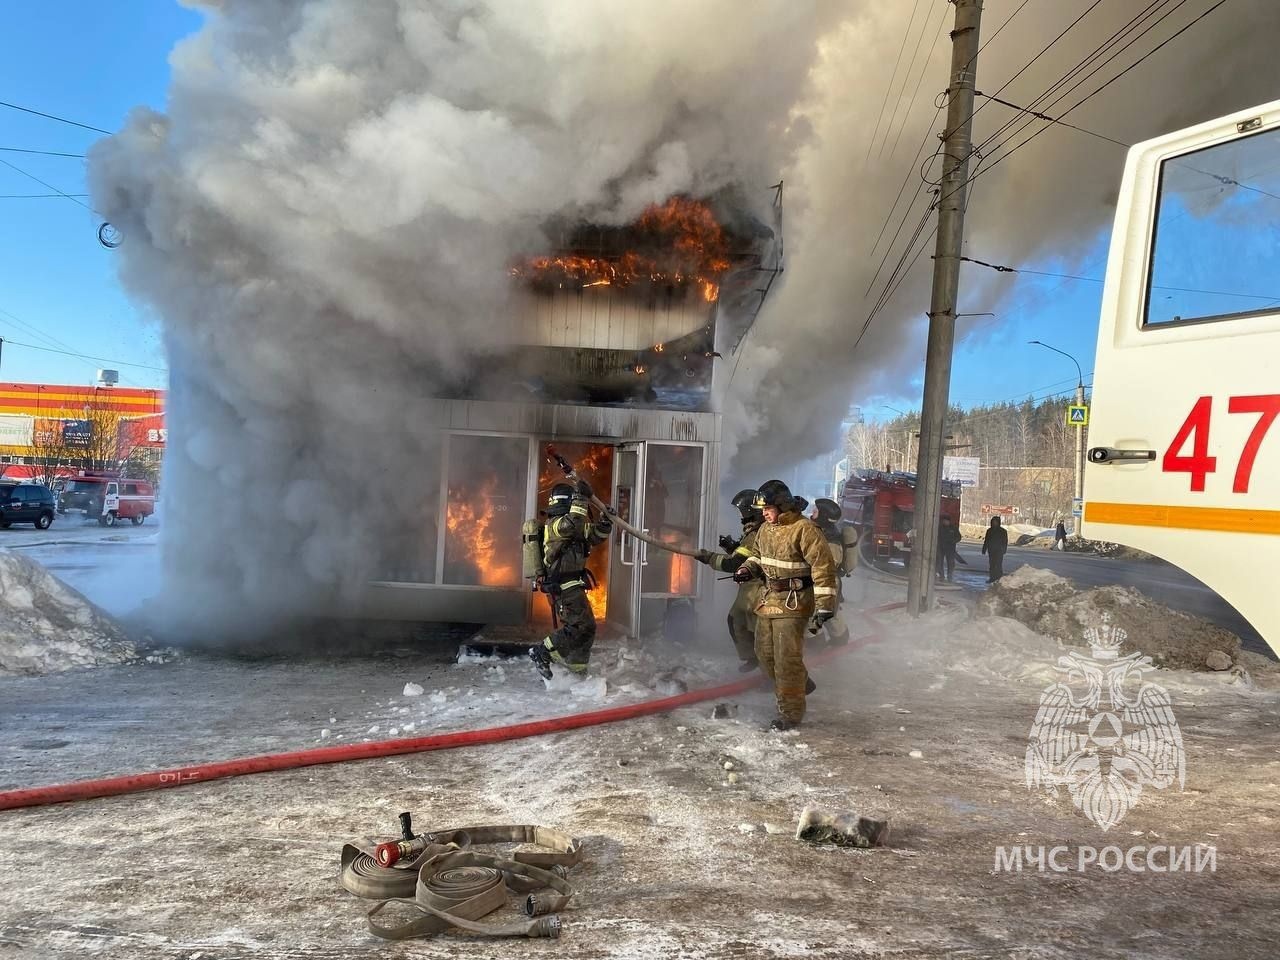 Павильон для продажи воды загорелся в Миассе: на месте работают спасатели